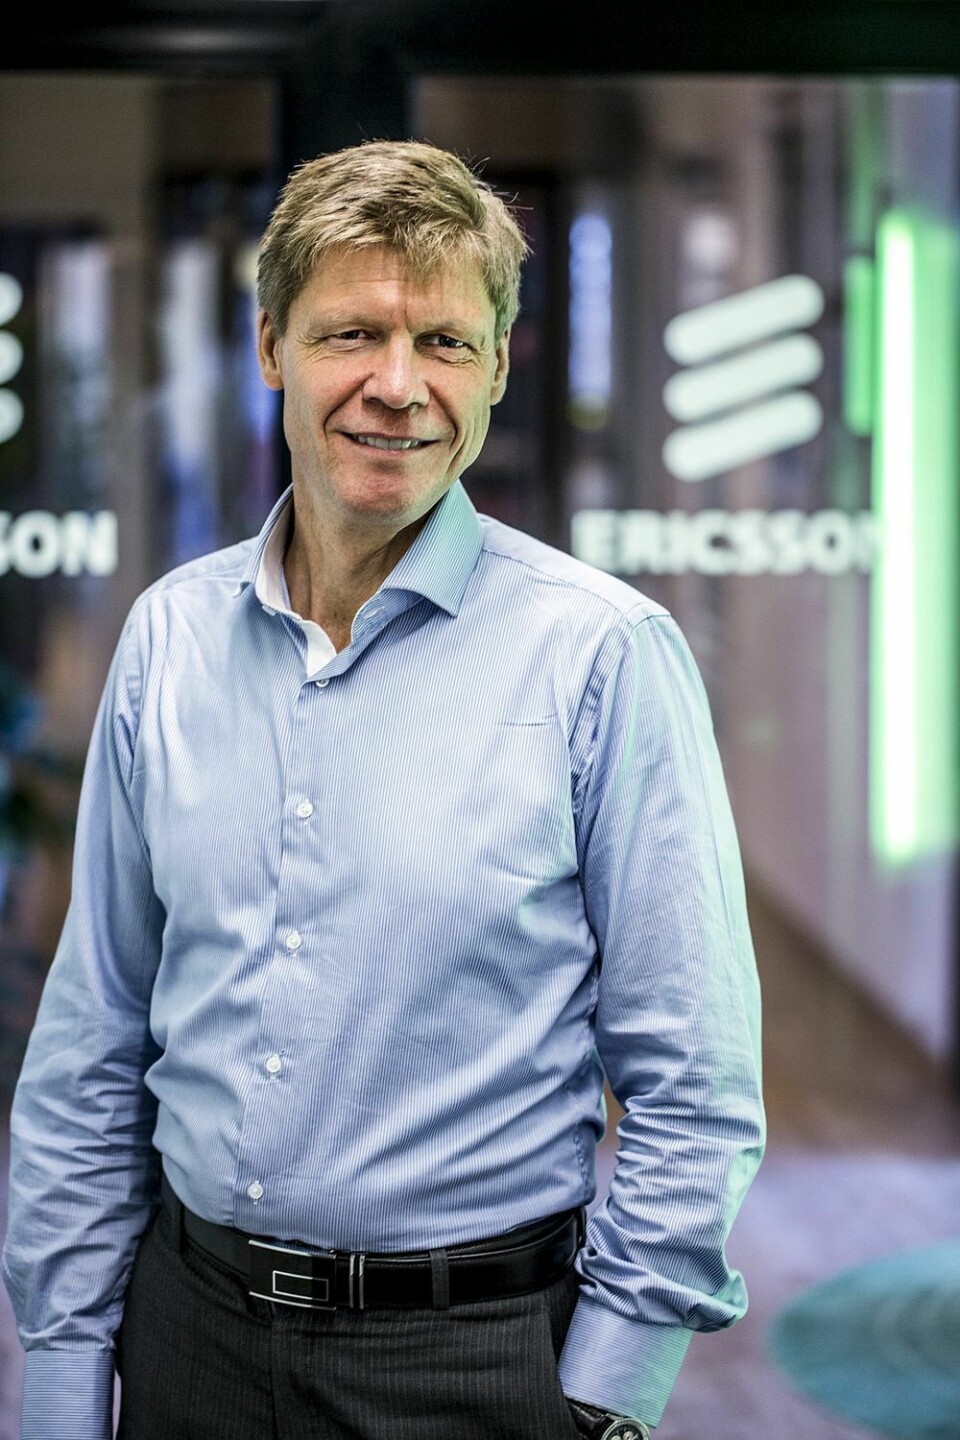 EVOLUSJON: 5G kommer til å gjennomgå en evolusjon fra å være 4G-avhengig til å være helt selvstendig. Når hele eller store deler av nettet er selvstendig, vil nye muligheter åpne seg, forklarer Stian Solberg, teknologidirektør i Ericsson Norge. (Foto: Stian Broch, Ericsson)